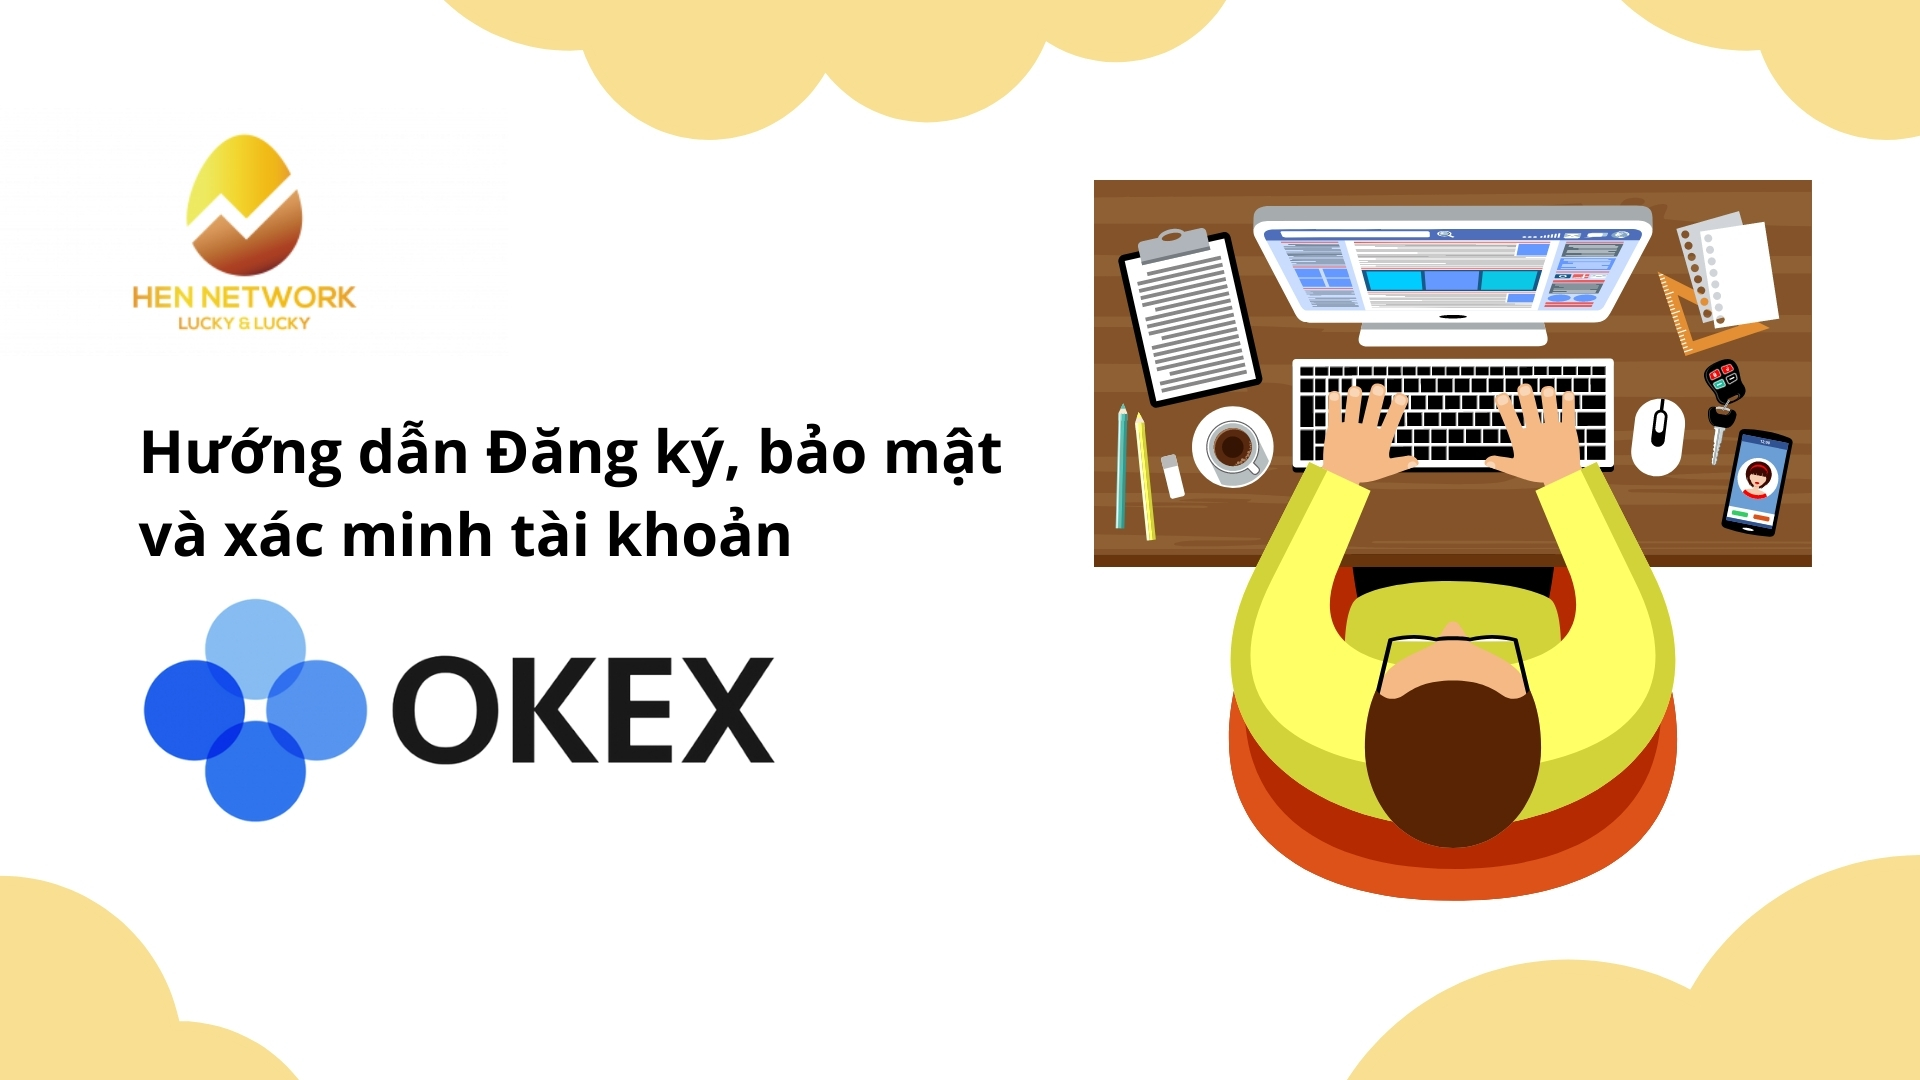 Hướng dẫn đăng ký, bảo mật, xác minh tài khoản OKEx